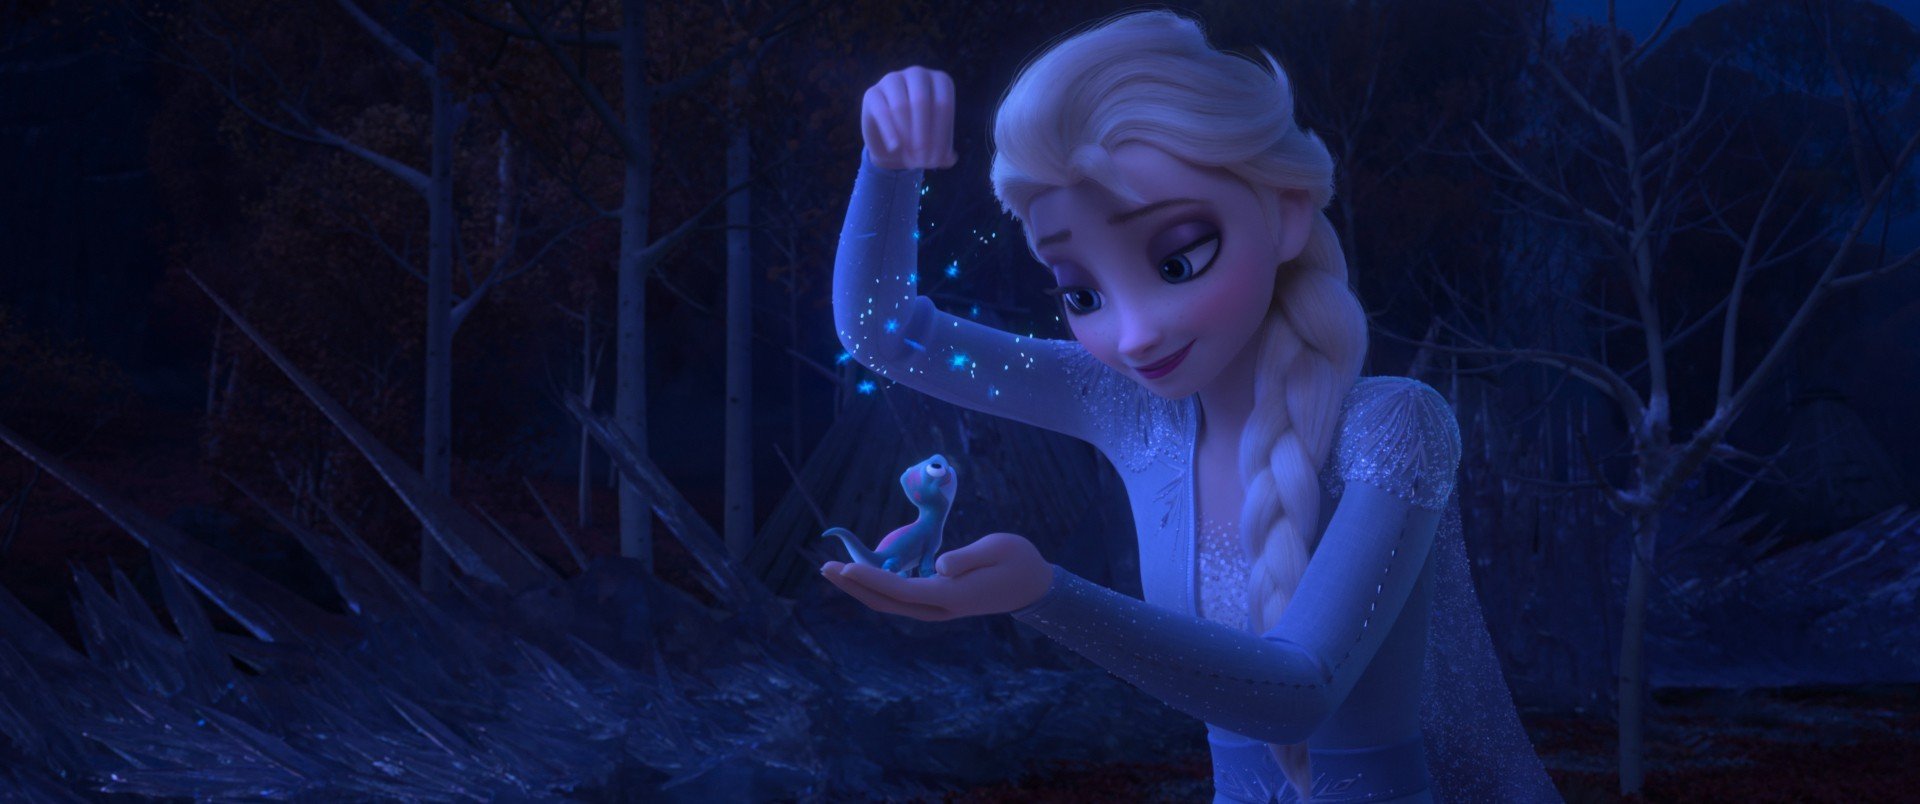 Elsa from Walt Disney Pictures' Frozen II (2019)